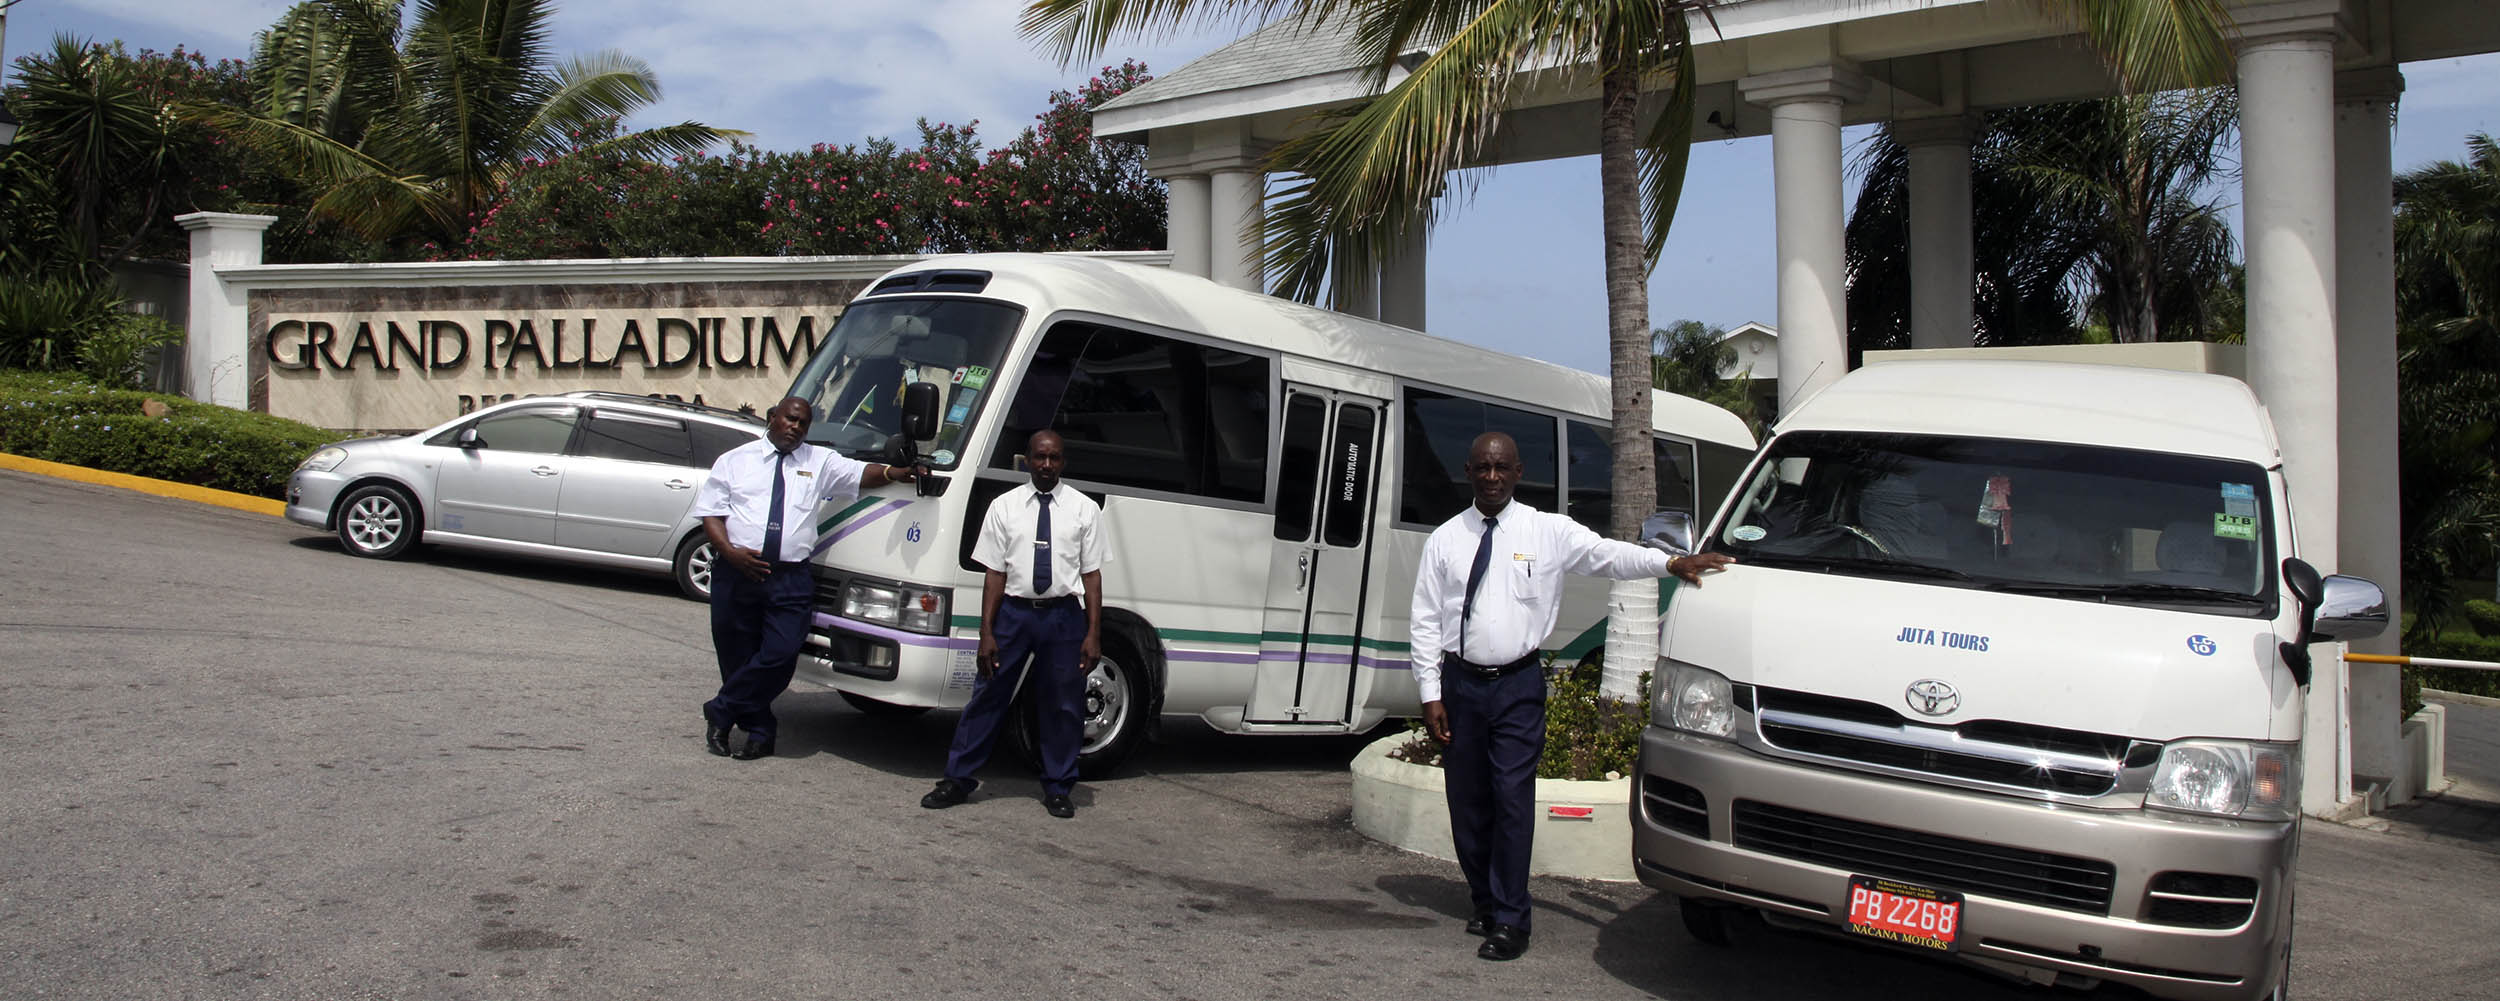 JUTA Taxi and Tours Jamaica @ Grand Paladium - Lucea Jamaica